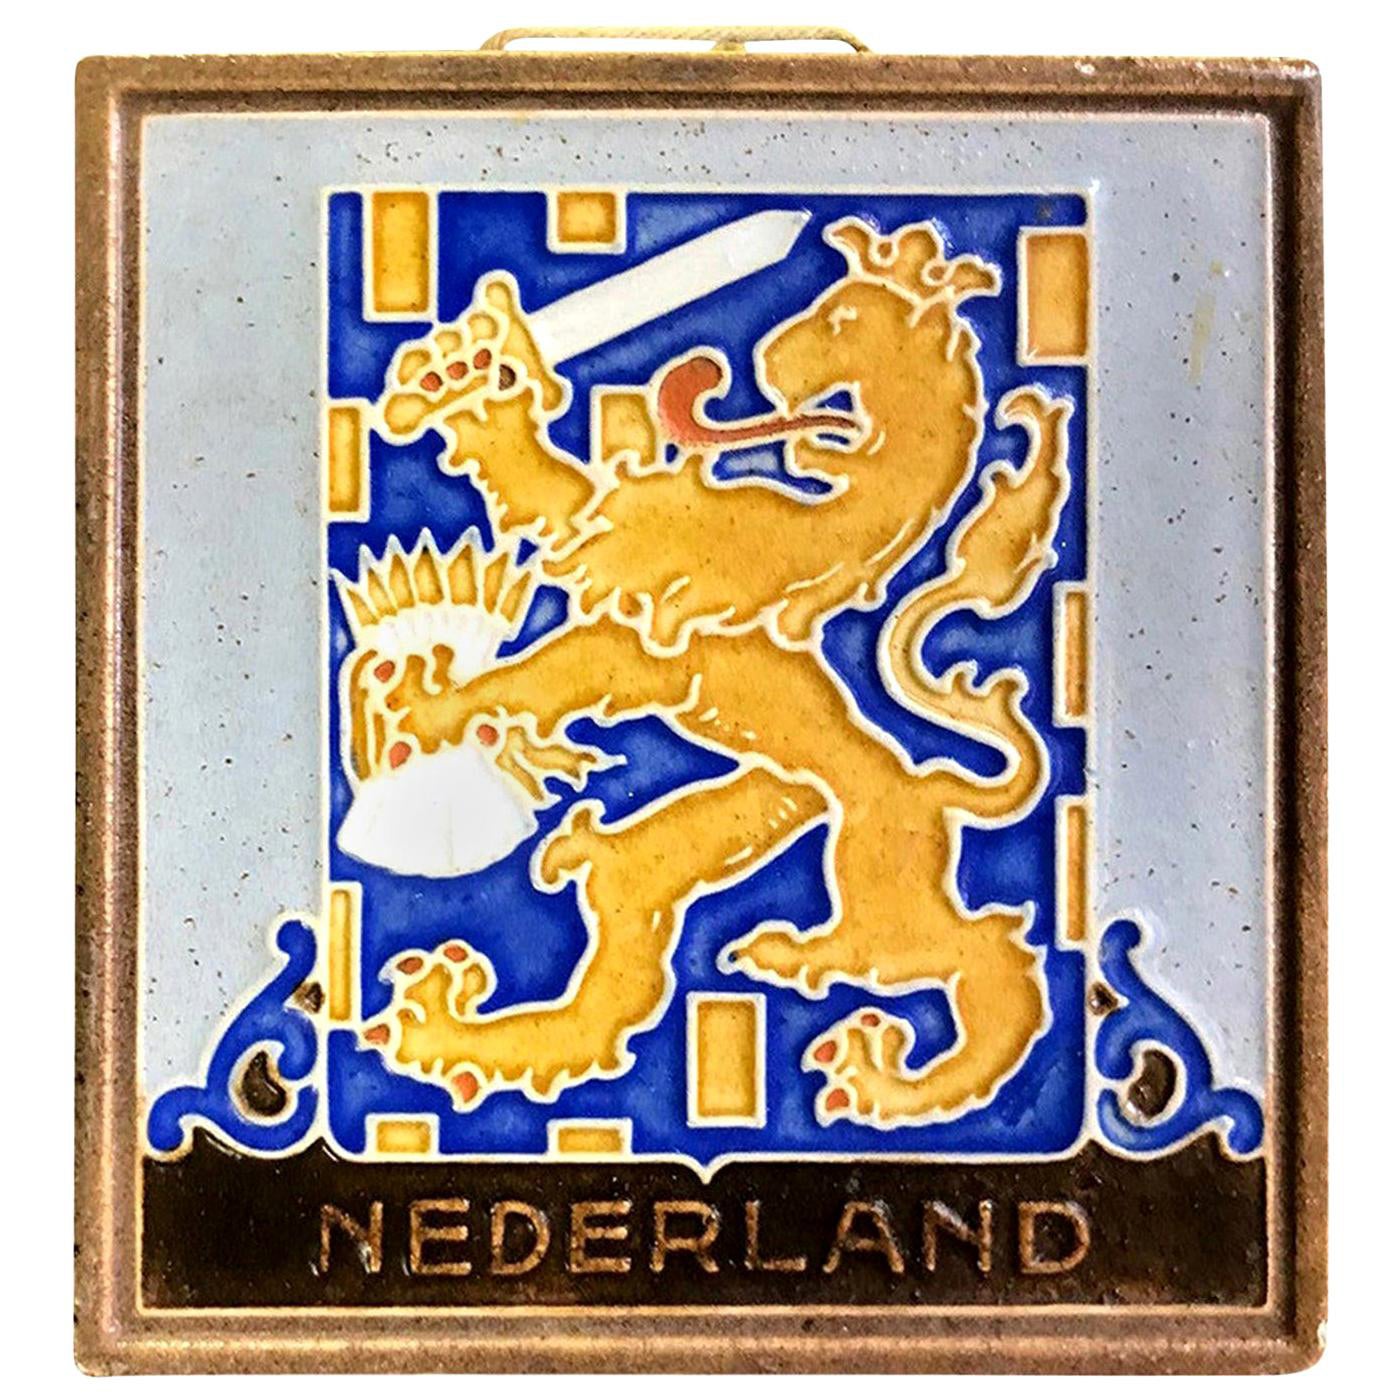 Delft Westraven "Nederland" Holland Ceramic Pottery Tile